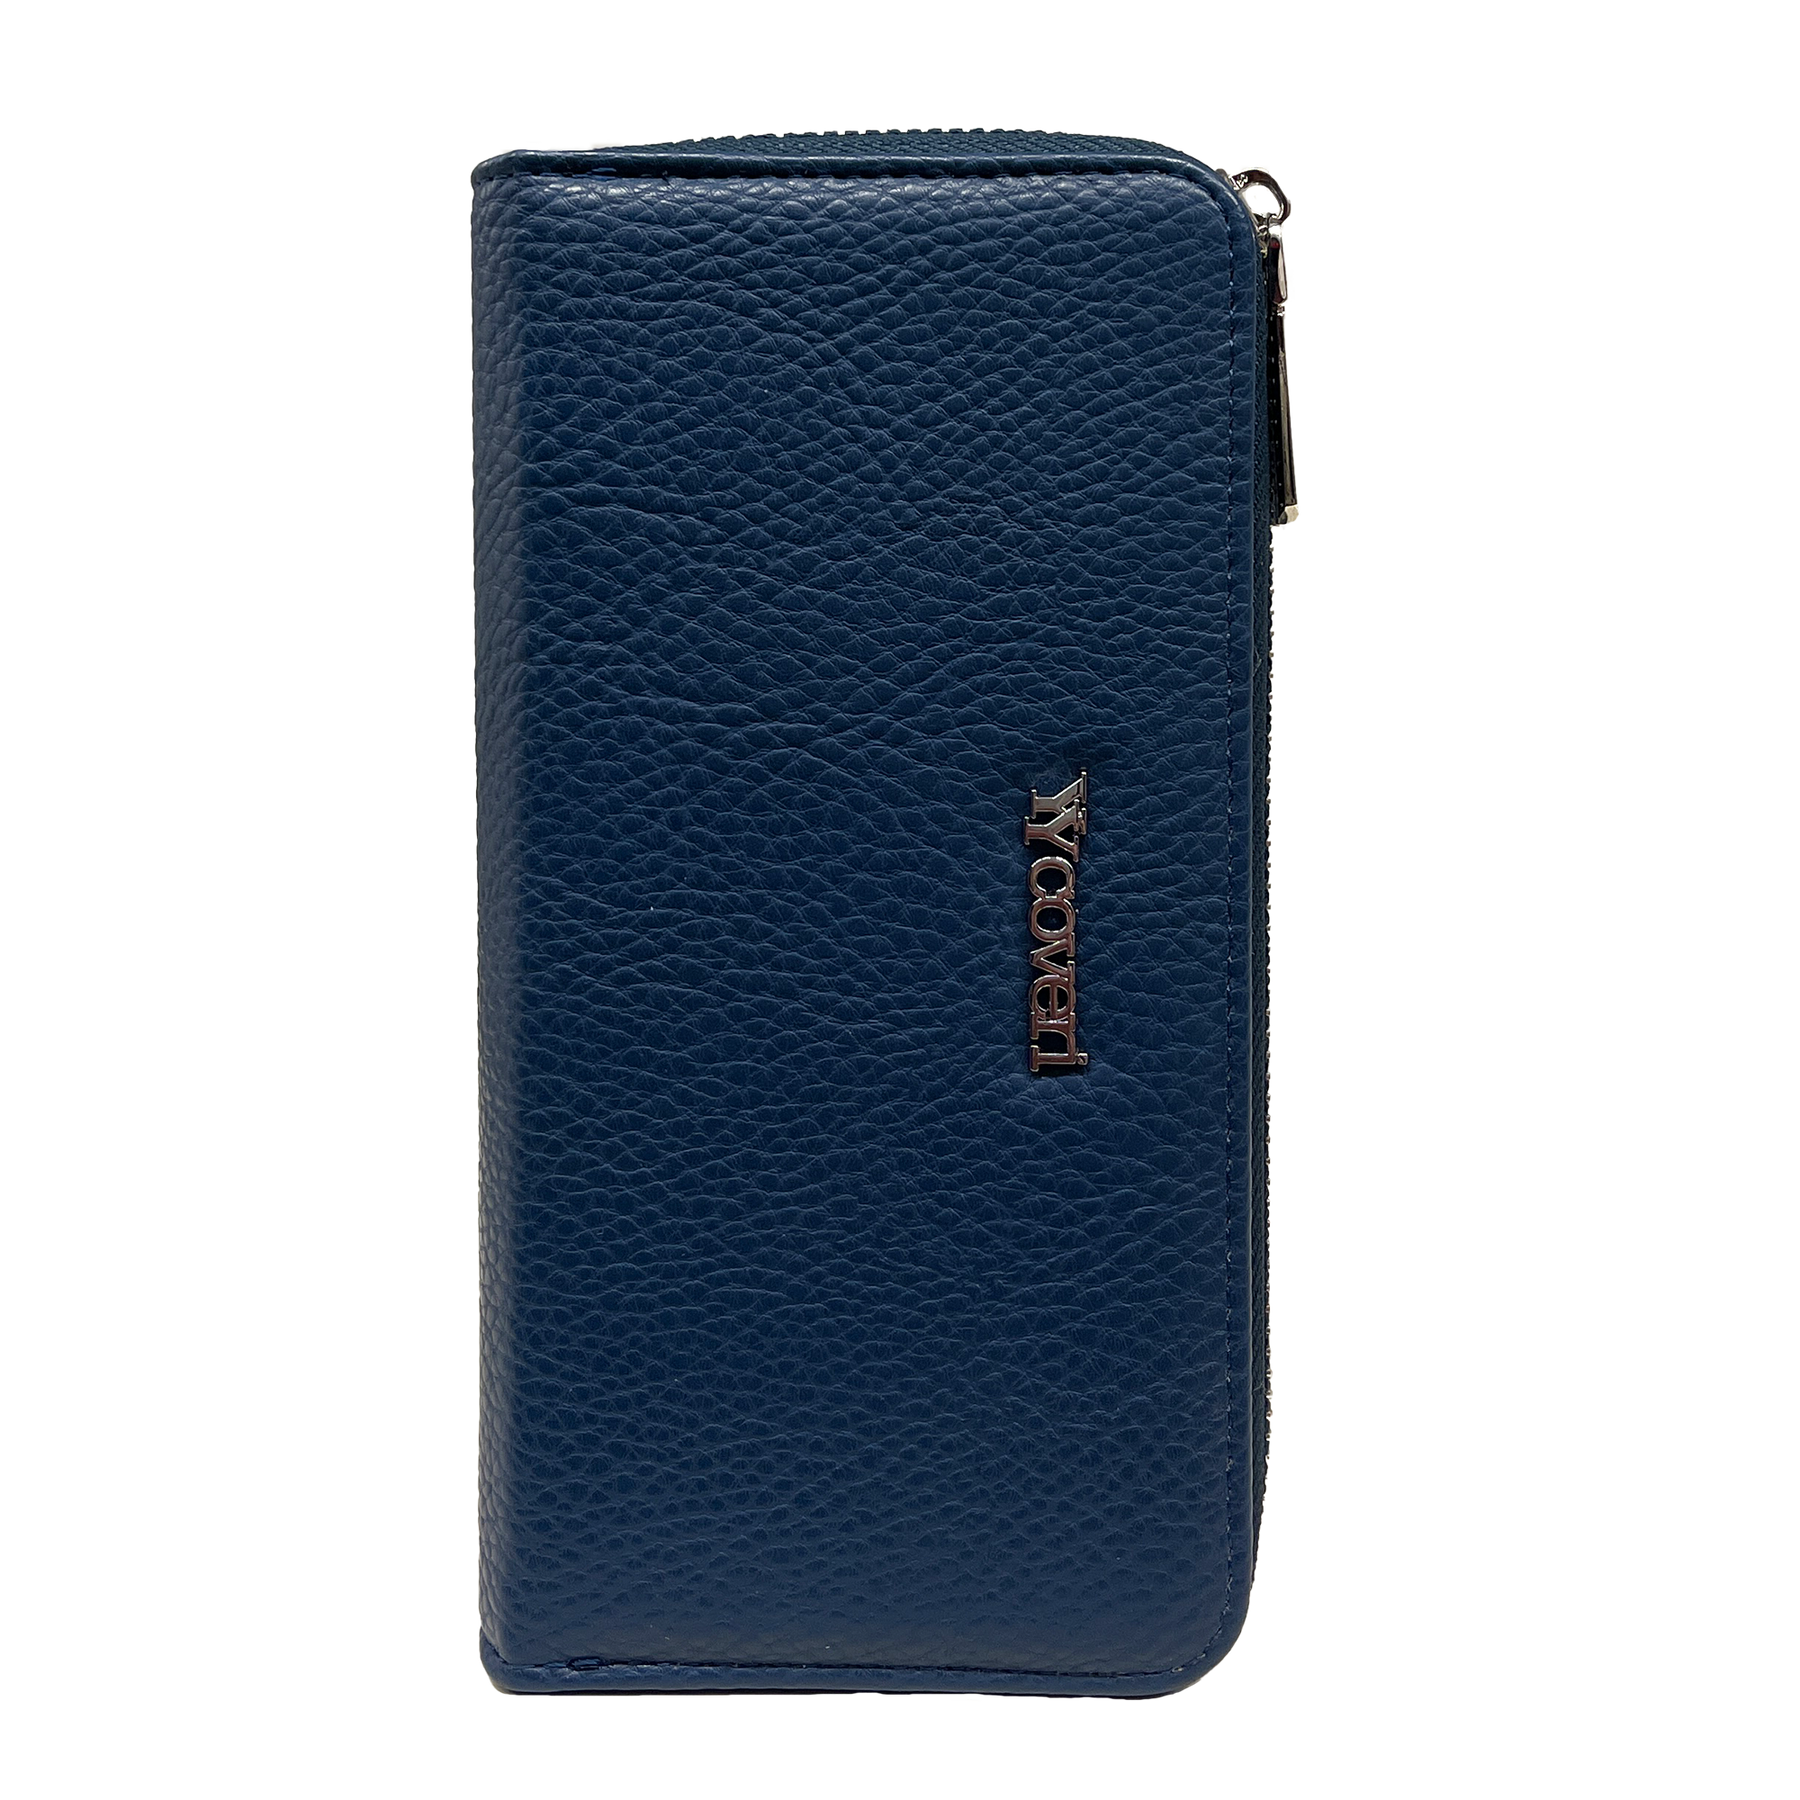 You  yuang Coveri Premium Blaue Brieftasche mit Mehreren Fächern - Sicher und Stilvoll